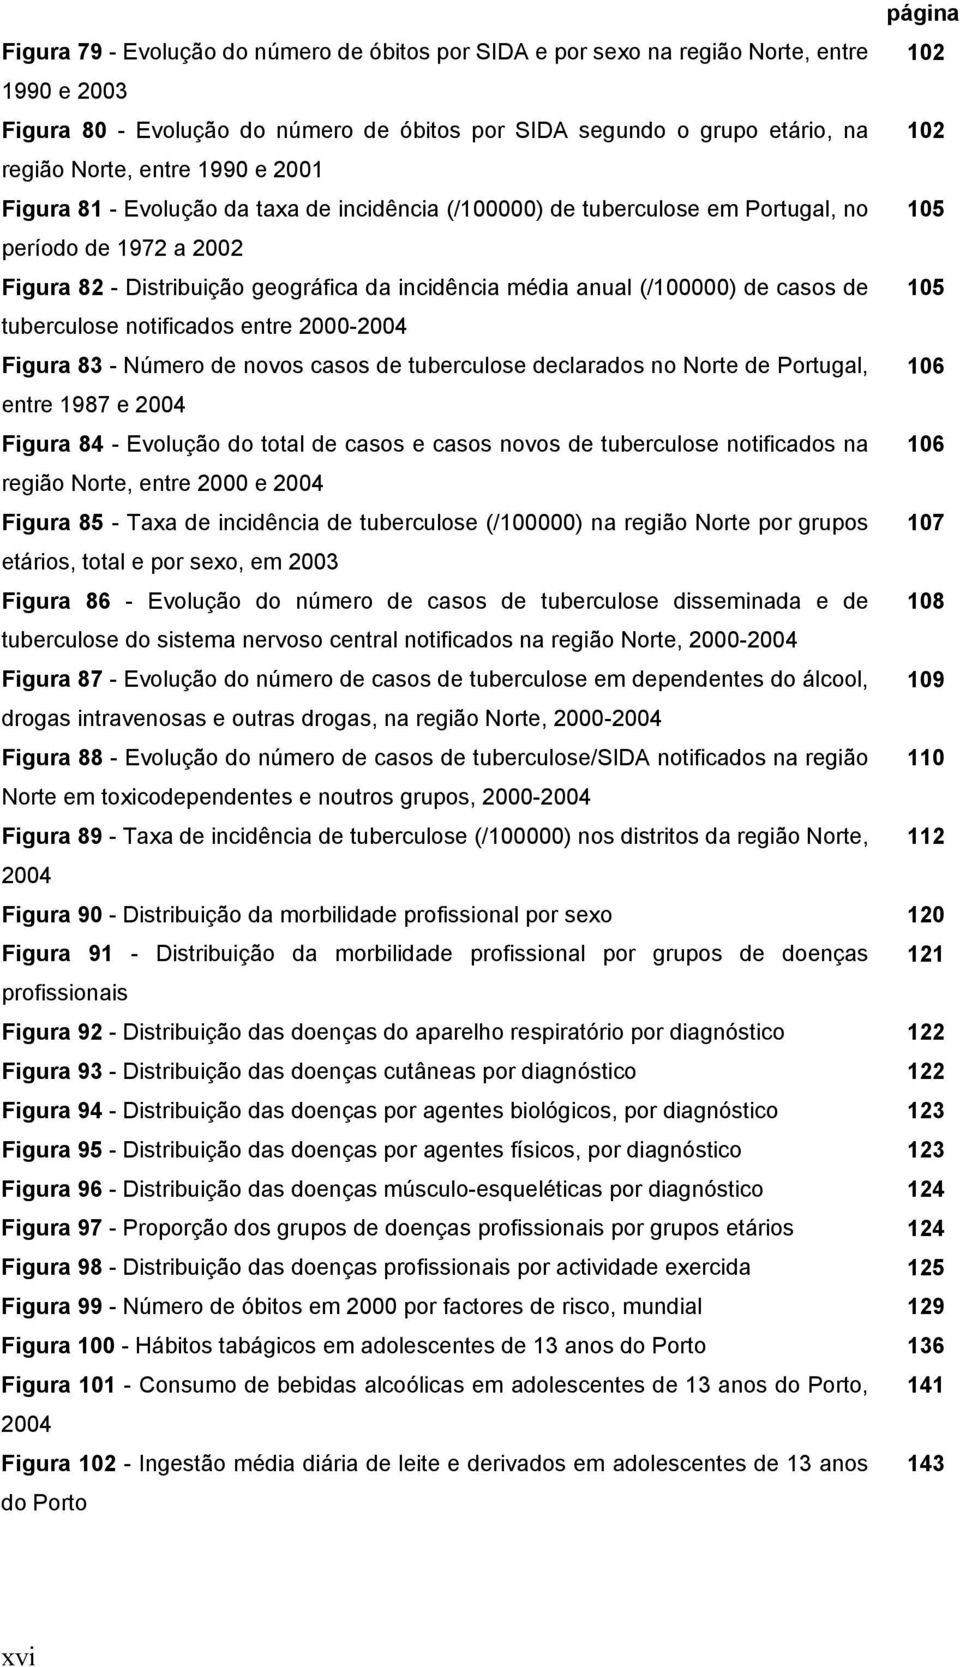 (/100000) de casos de 105 tuberculose notificados entre 2000-2004 Figura 83 - Número de novos casos de tuberculose declarados no Norte de Portugal, 106 entre 1987 e 2004 Figura 84 - Evolução do total